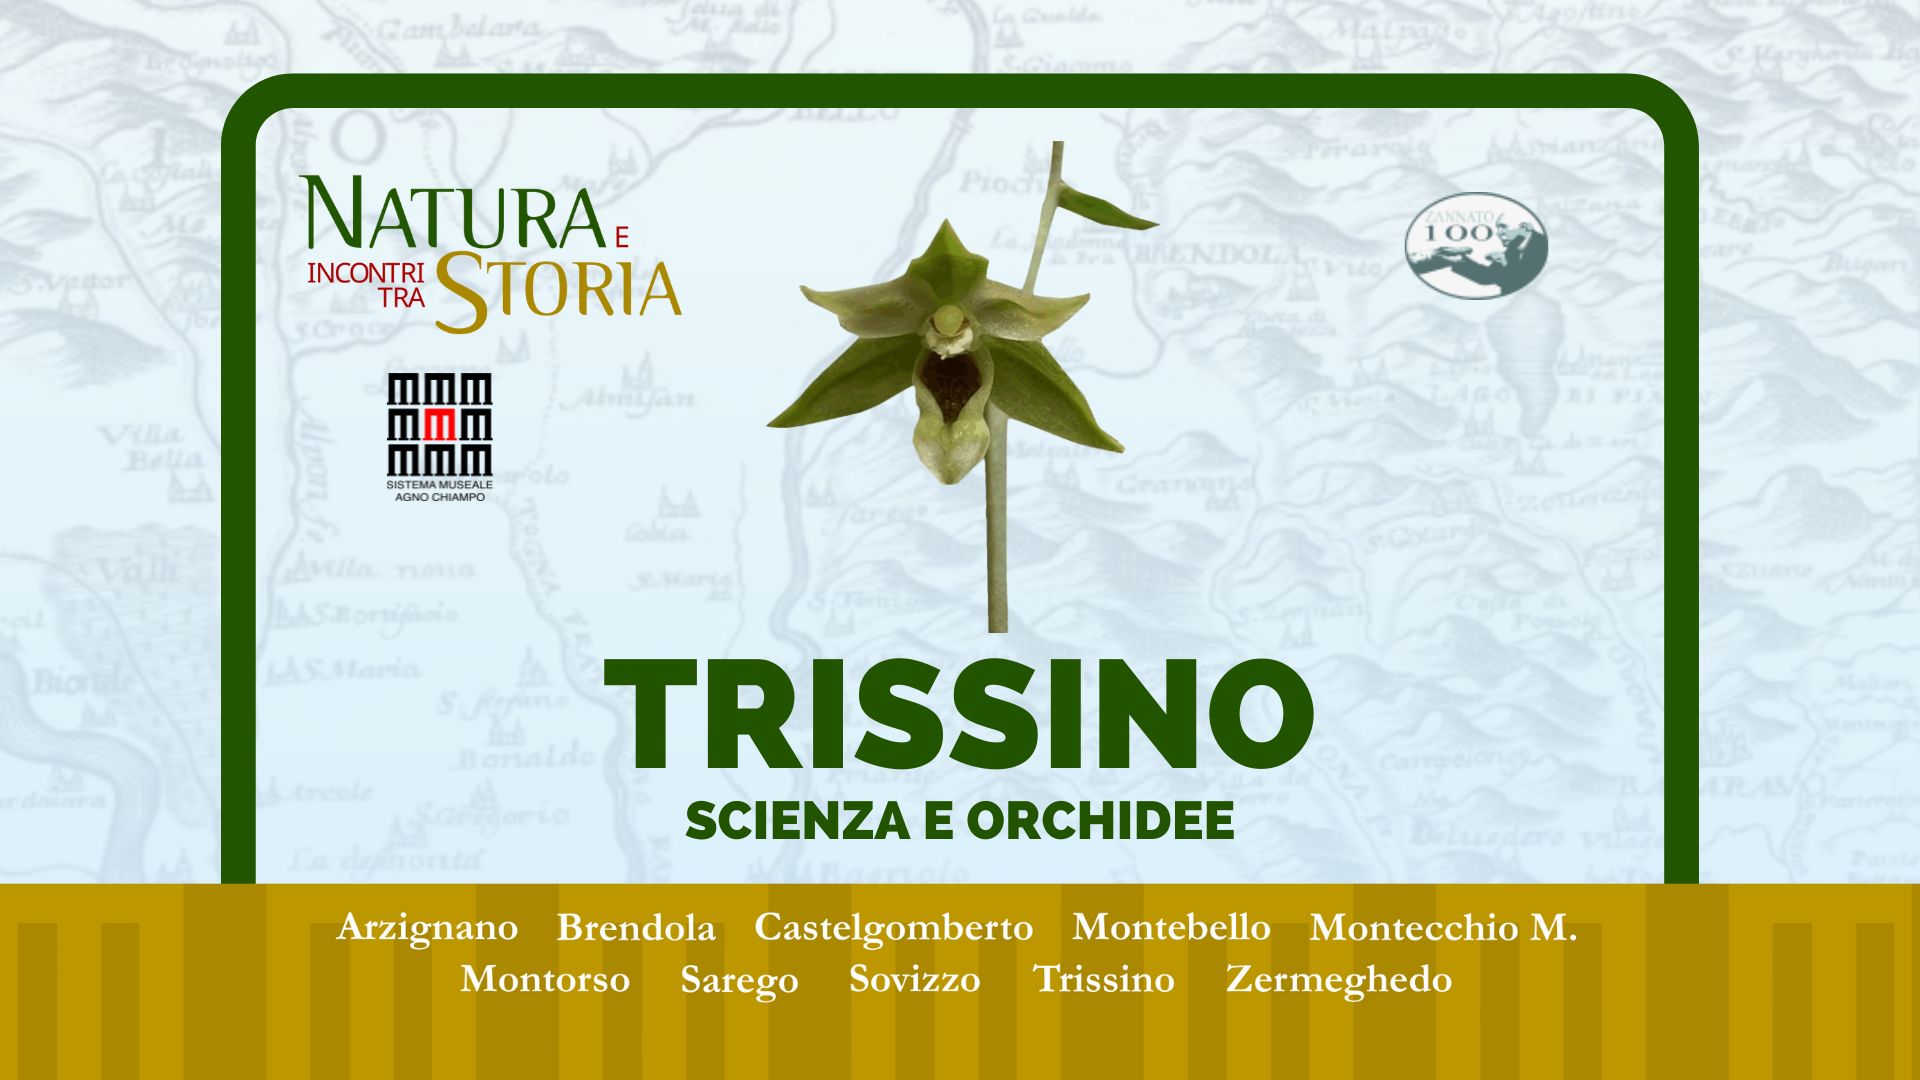 Incontri tra Storia e Natura - Scienza e orchidee, Trissino (VI)